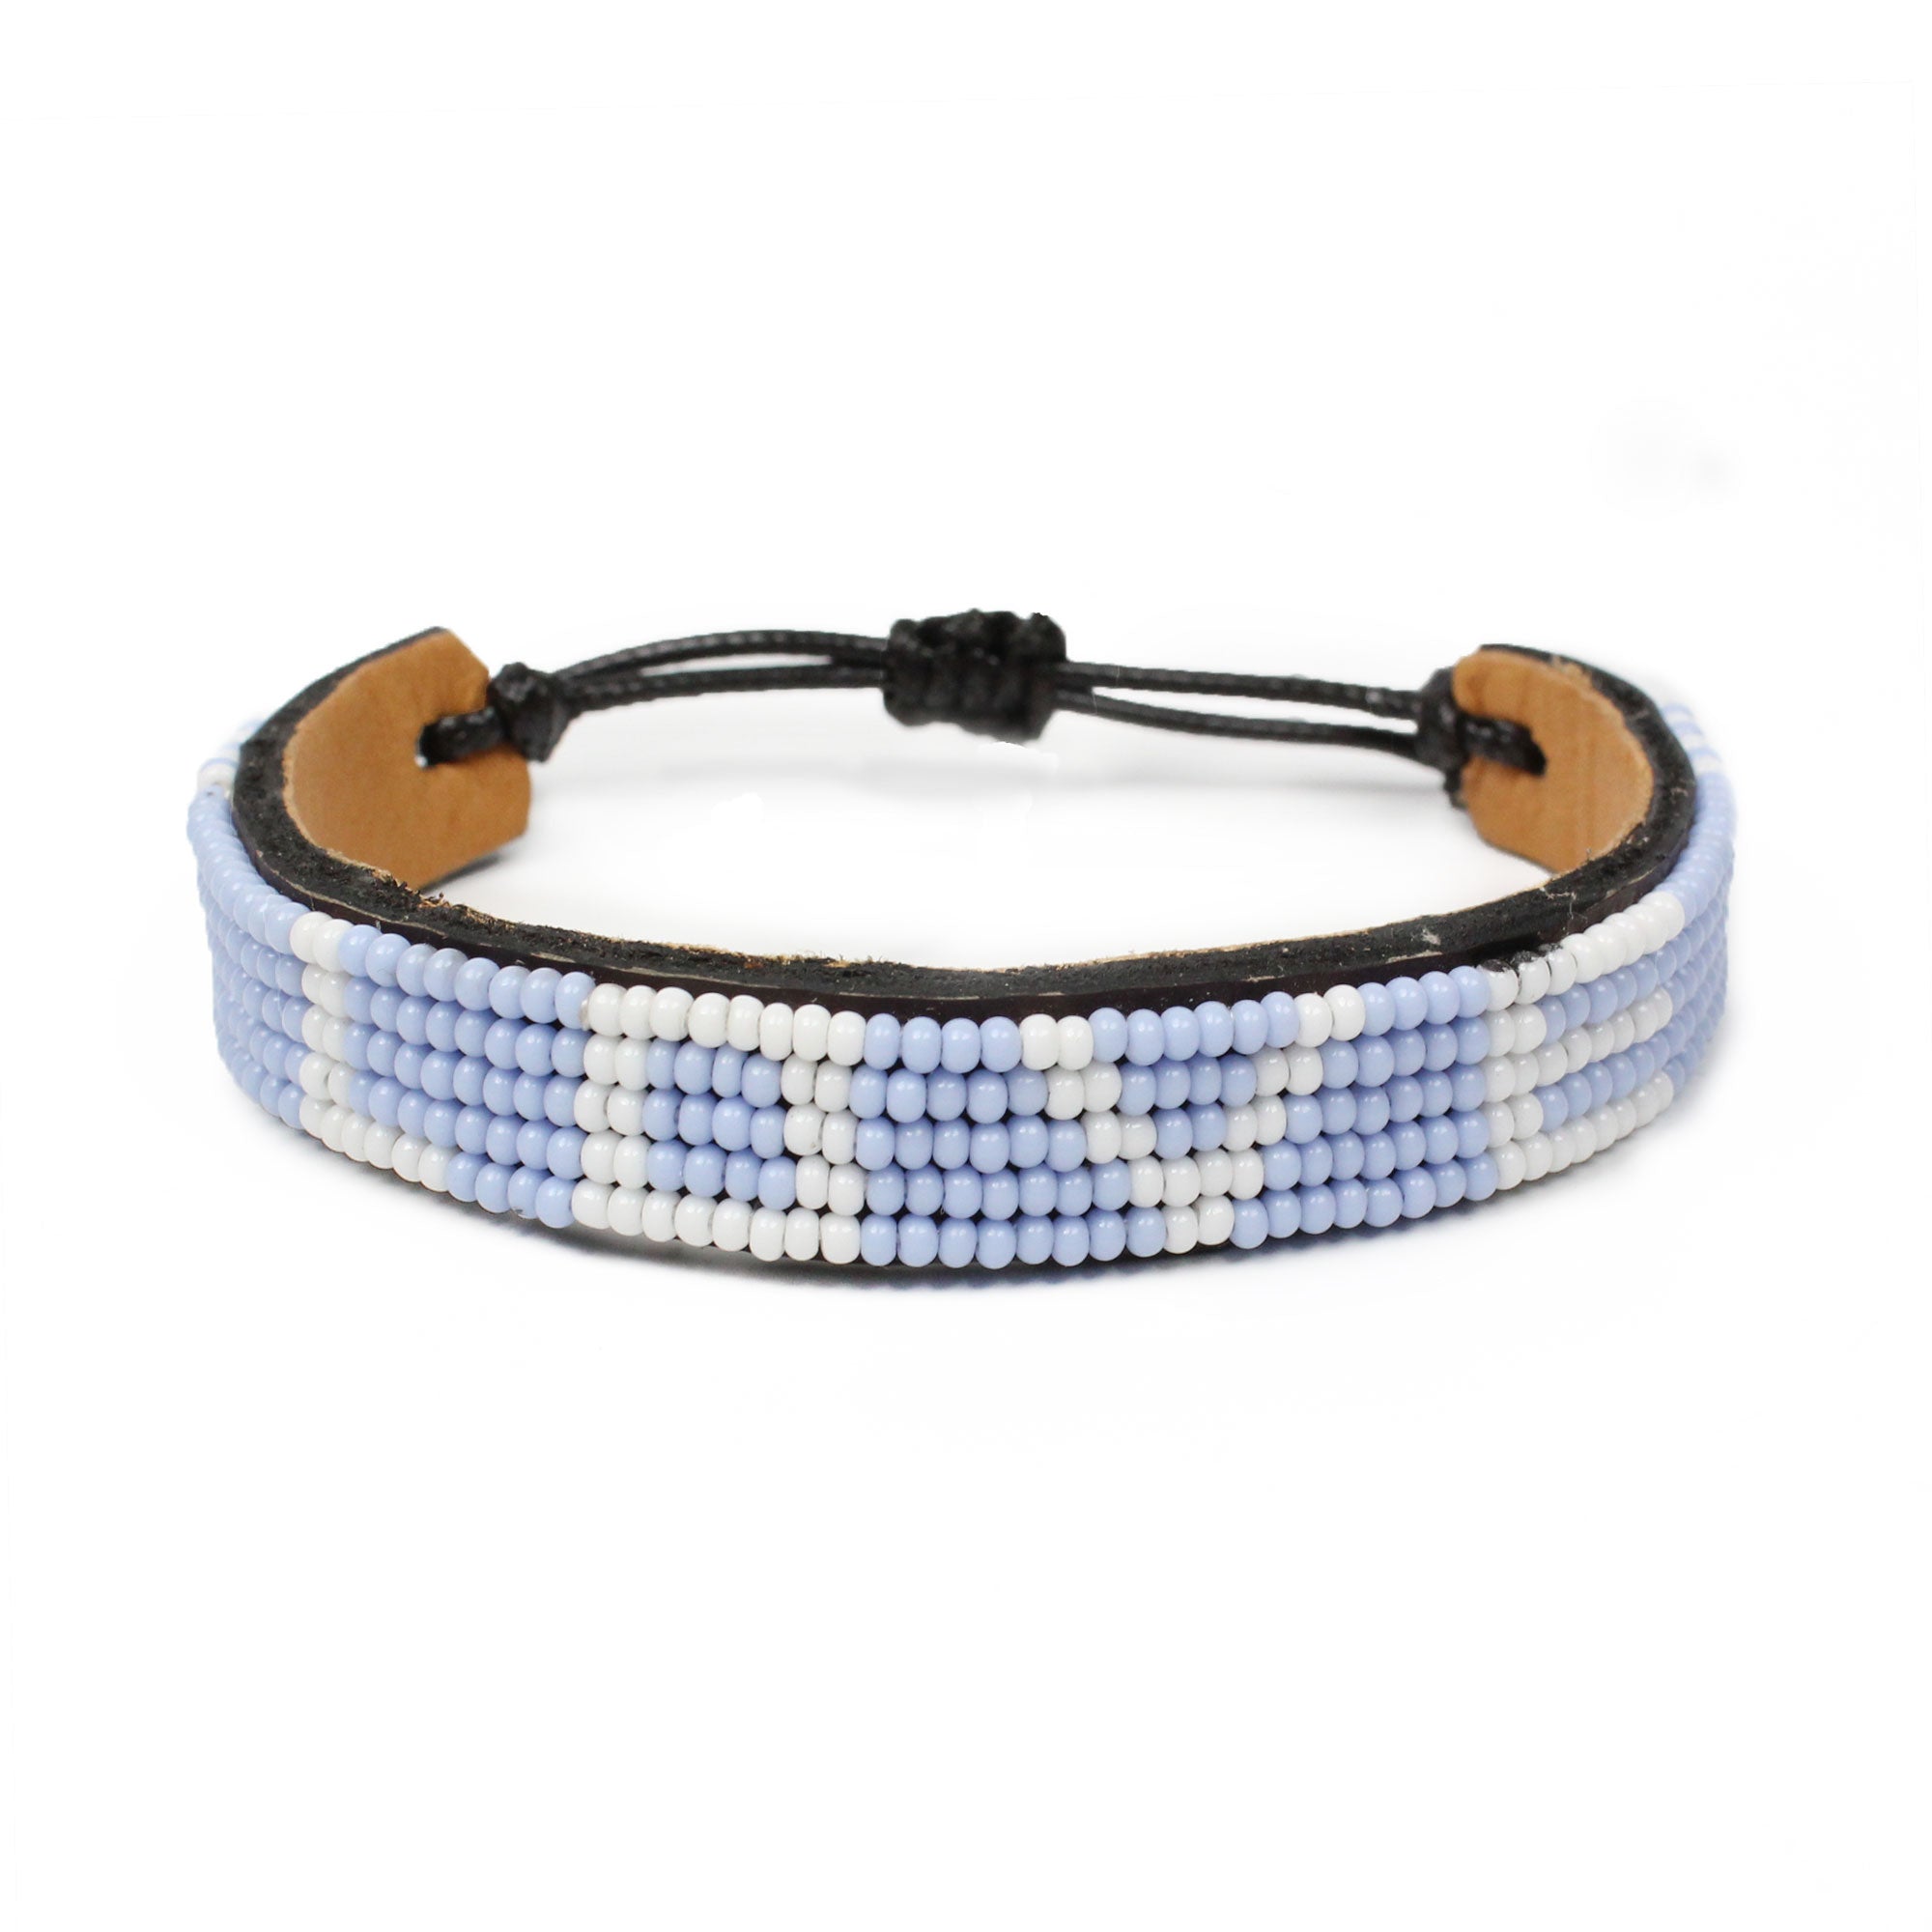 Blue & wooden bead wristlet 12mm – Simple Little Loves